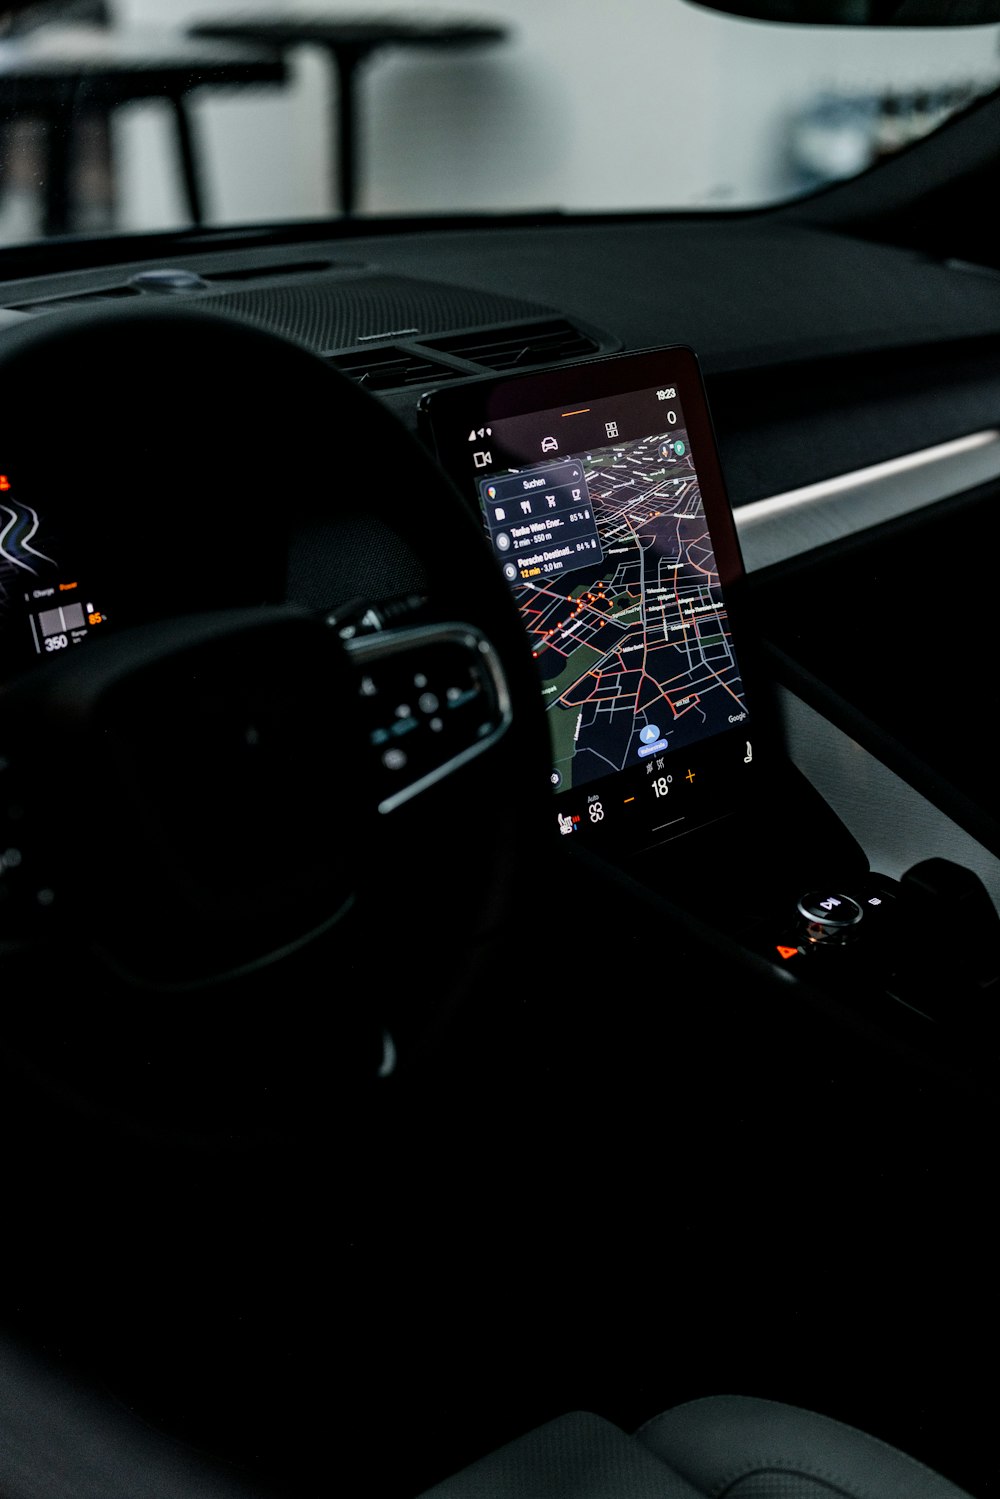 Le tableau de bord d’une voiture avec un appareil GPS